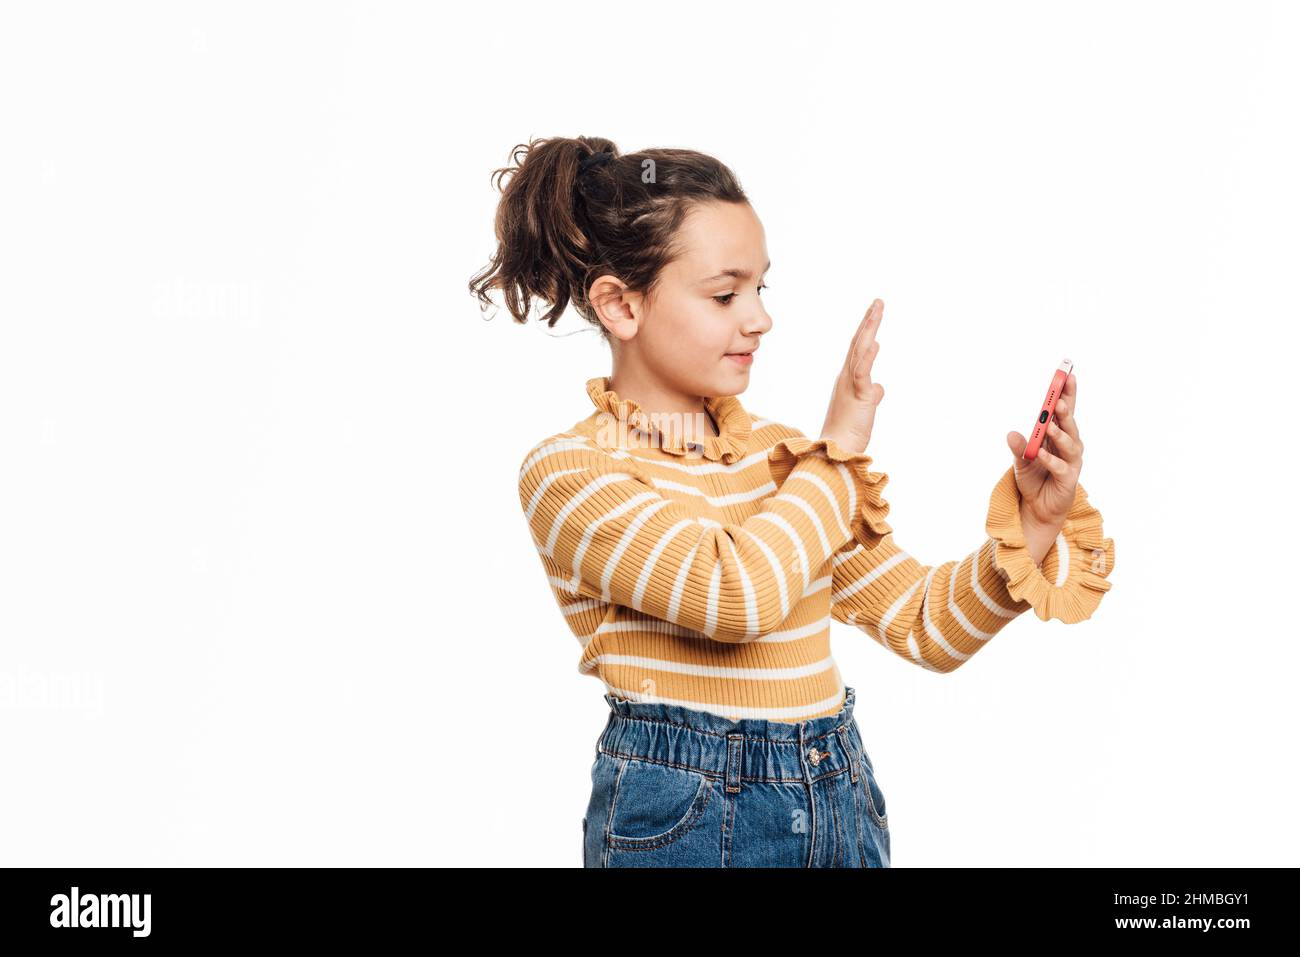 Mädchen winkt mit der Hand und grüßt jemanden, während sie ein Video aufnimmt oder einen Videoanruf auf ihrem Mobiltelefon führt. Stockfoto